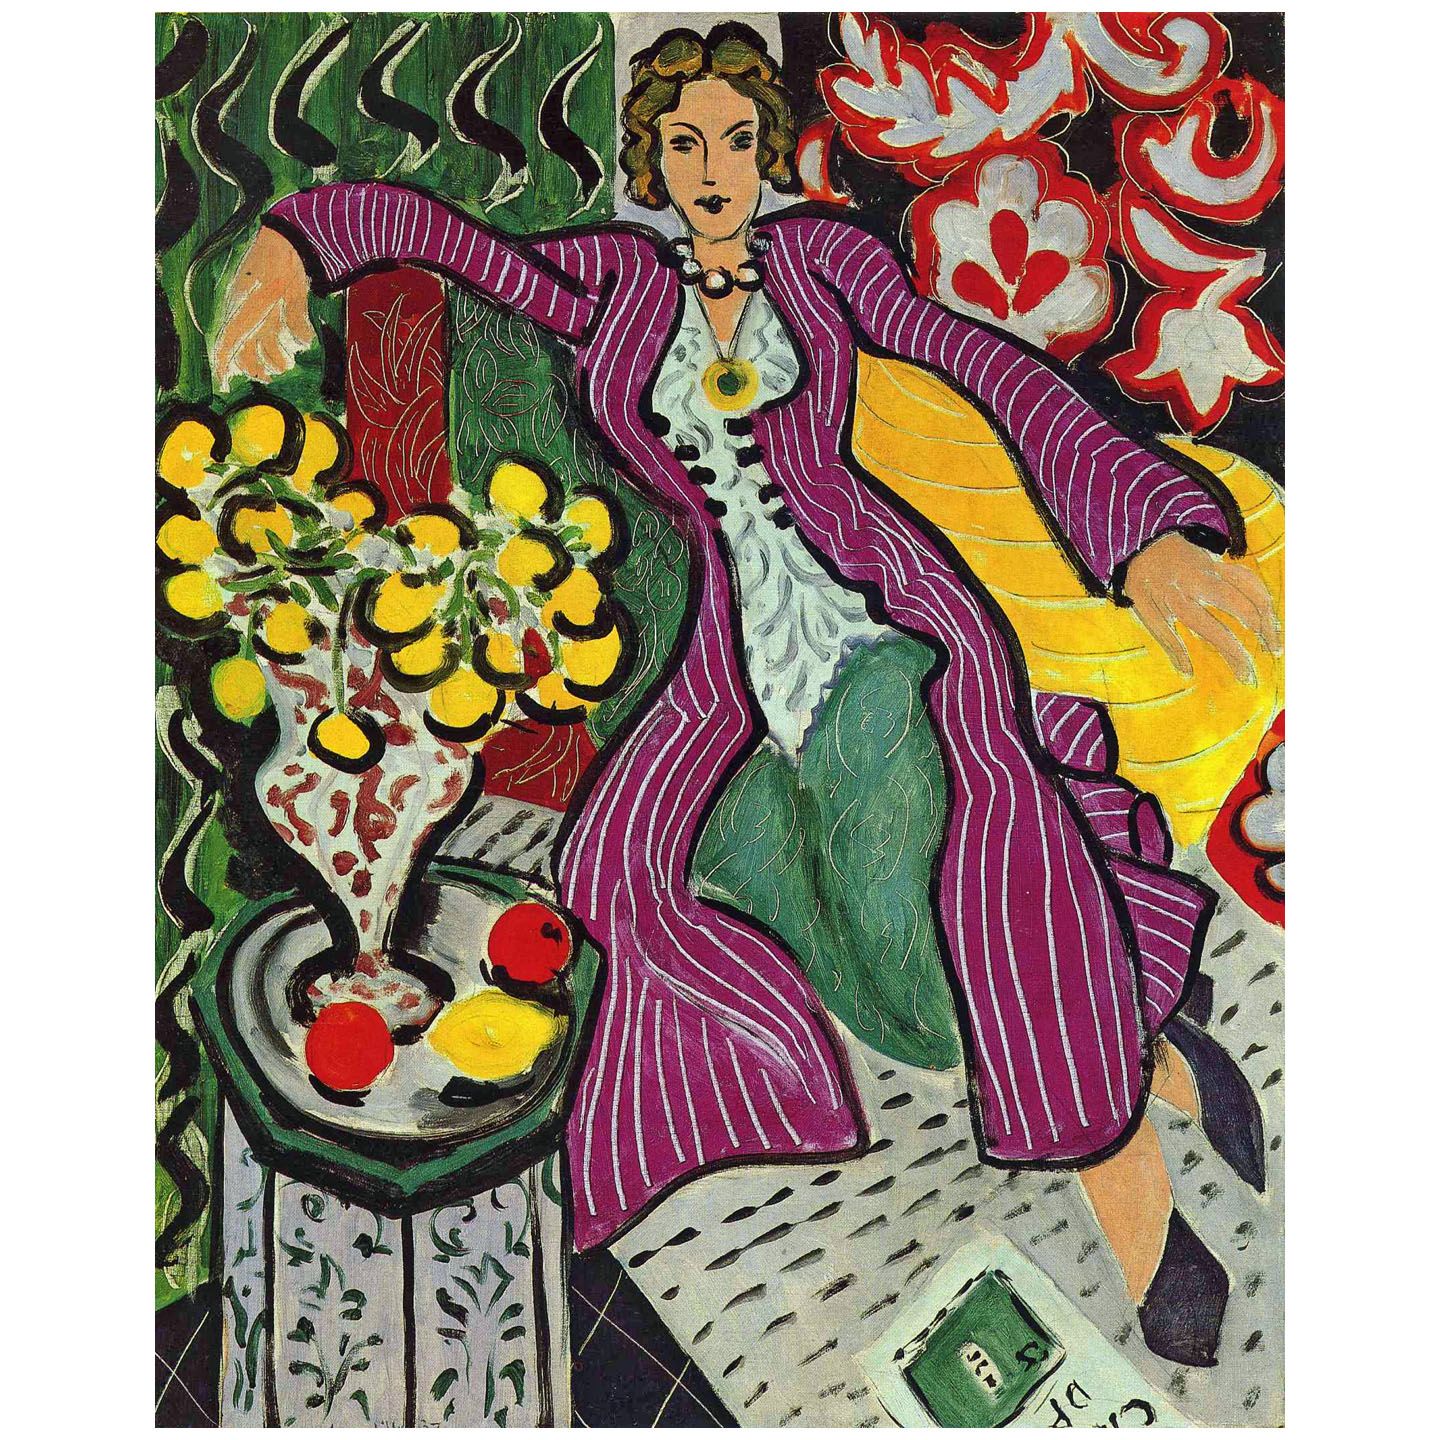 Henri Matisse. Femme au manteaux violet. 1937. MFAH Houston